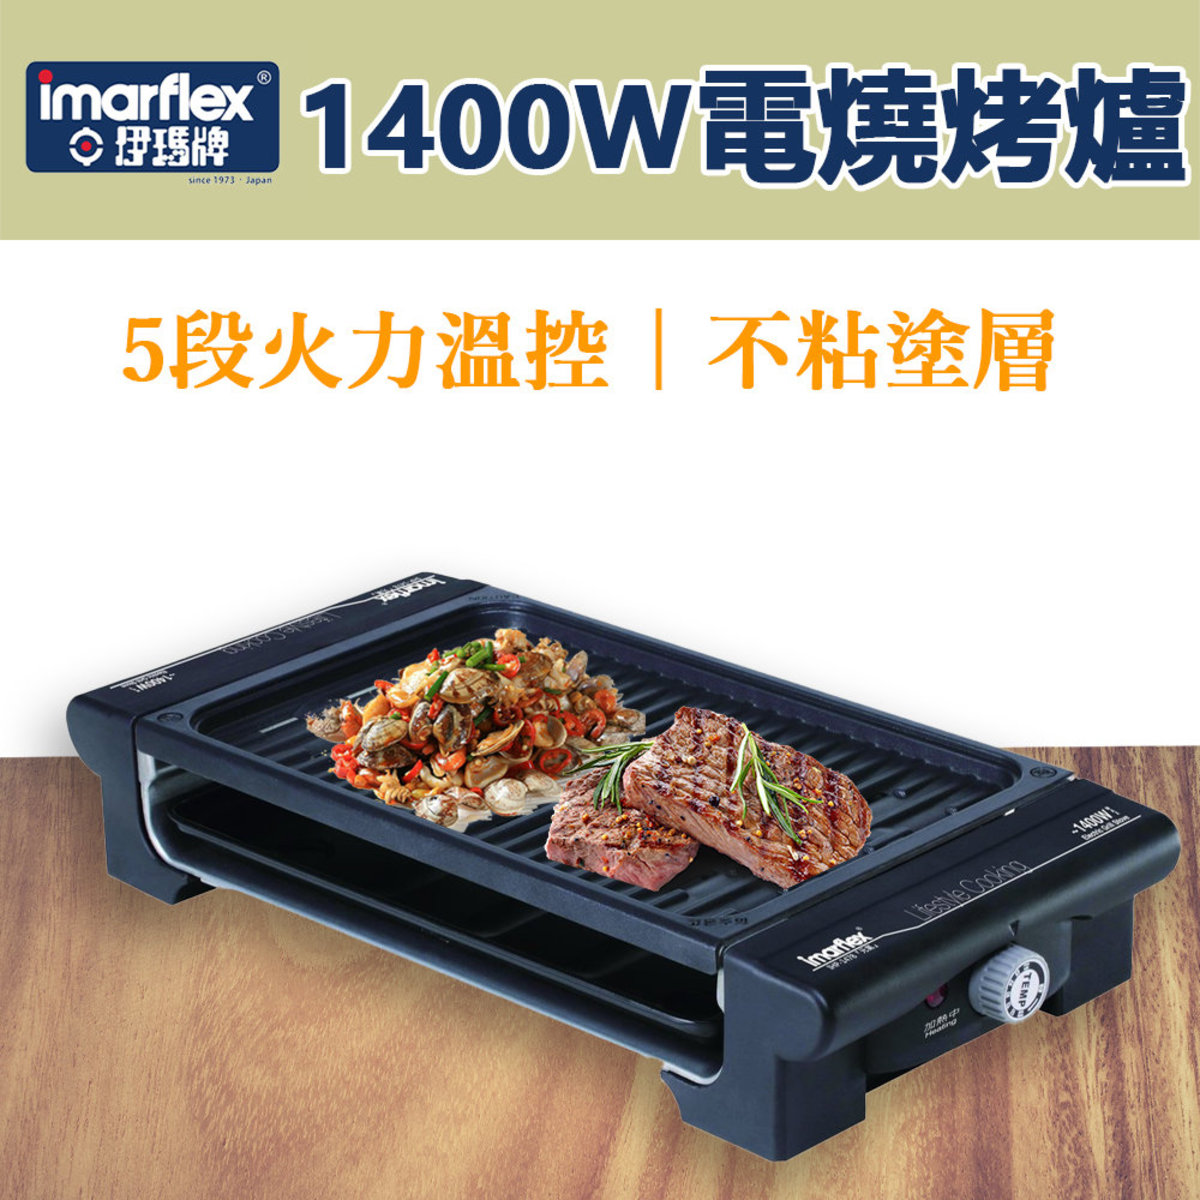 1400W 電燒烤爐 IHP-1478 (5段火力溫控) (SUP:MYP4)